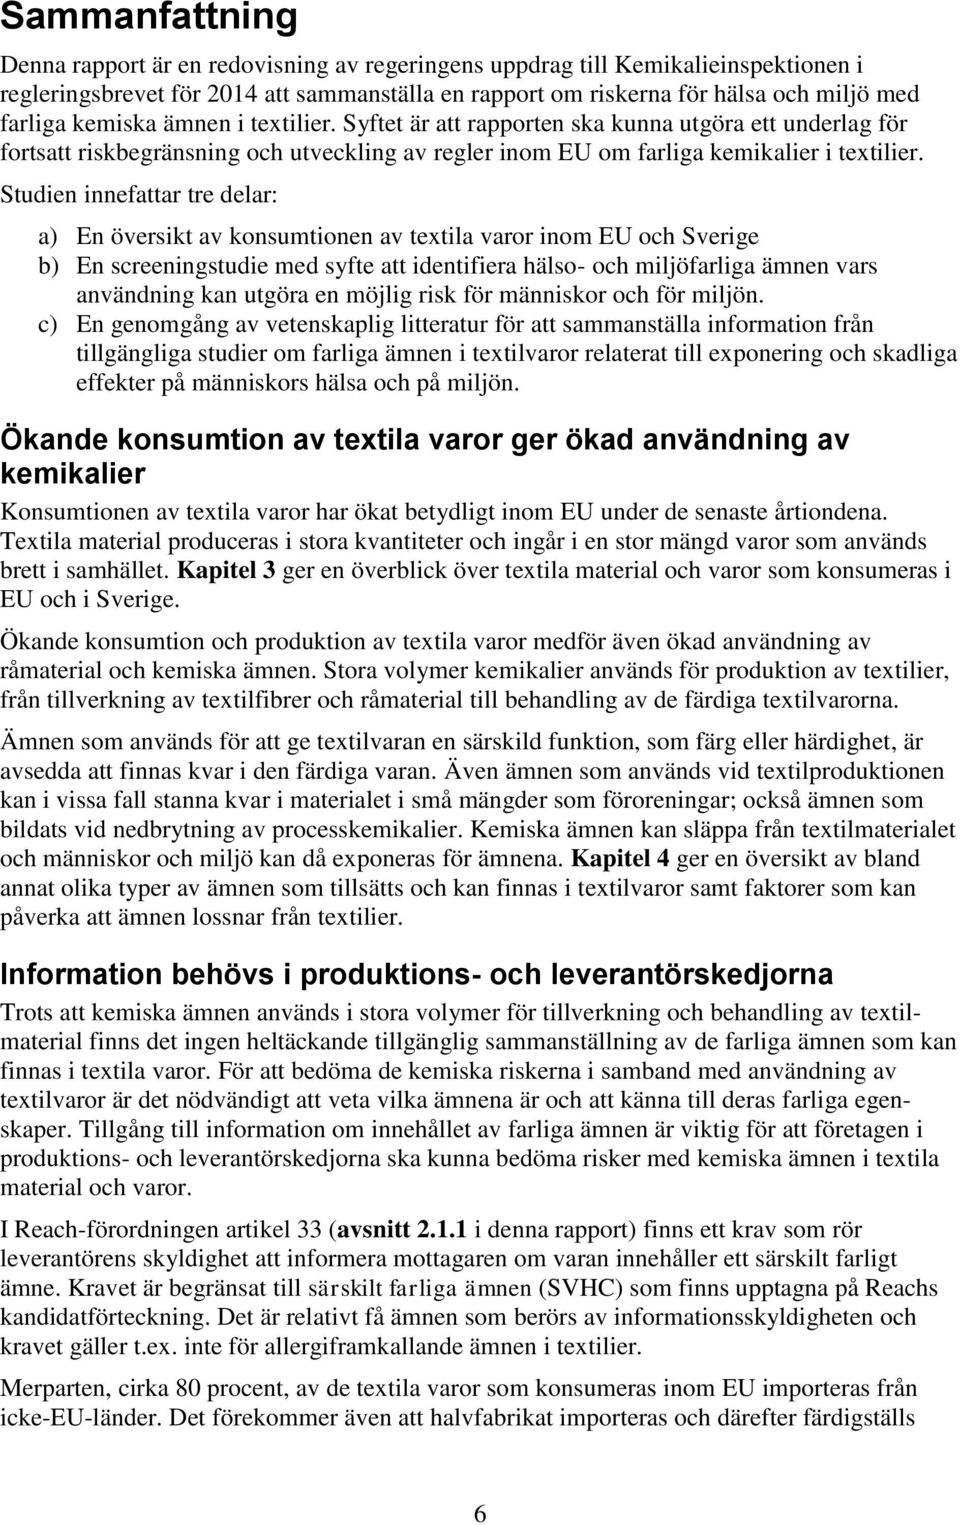 Studien innefattar tre delar: a) En översikt av konsumtionen av textila varor inom EU och Sverige b) En screeningstudie med syfte att identifiera hälso- och miljöfarliga ämnen vars användning kan